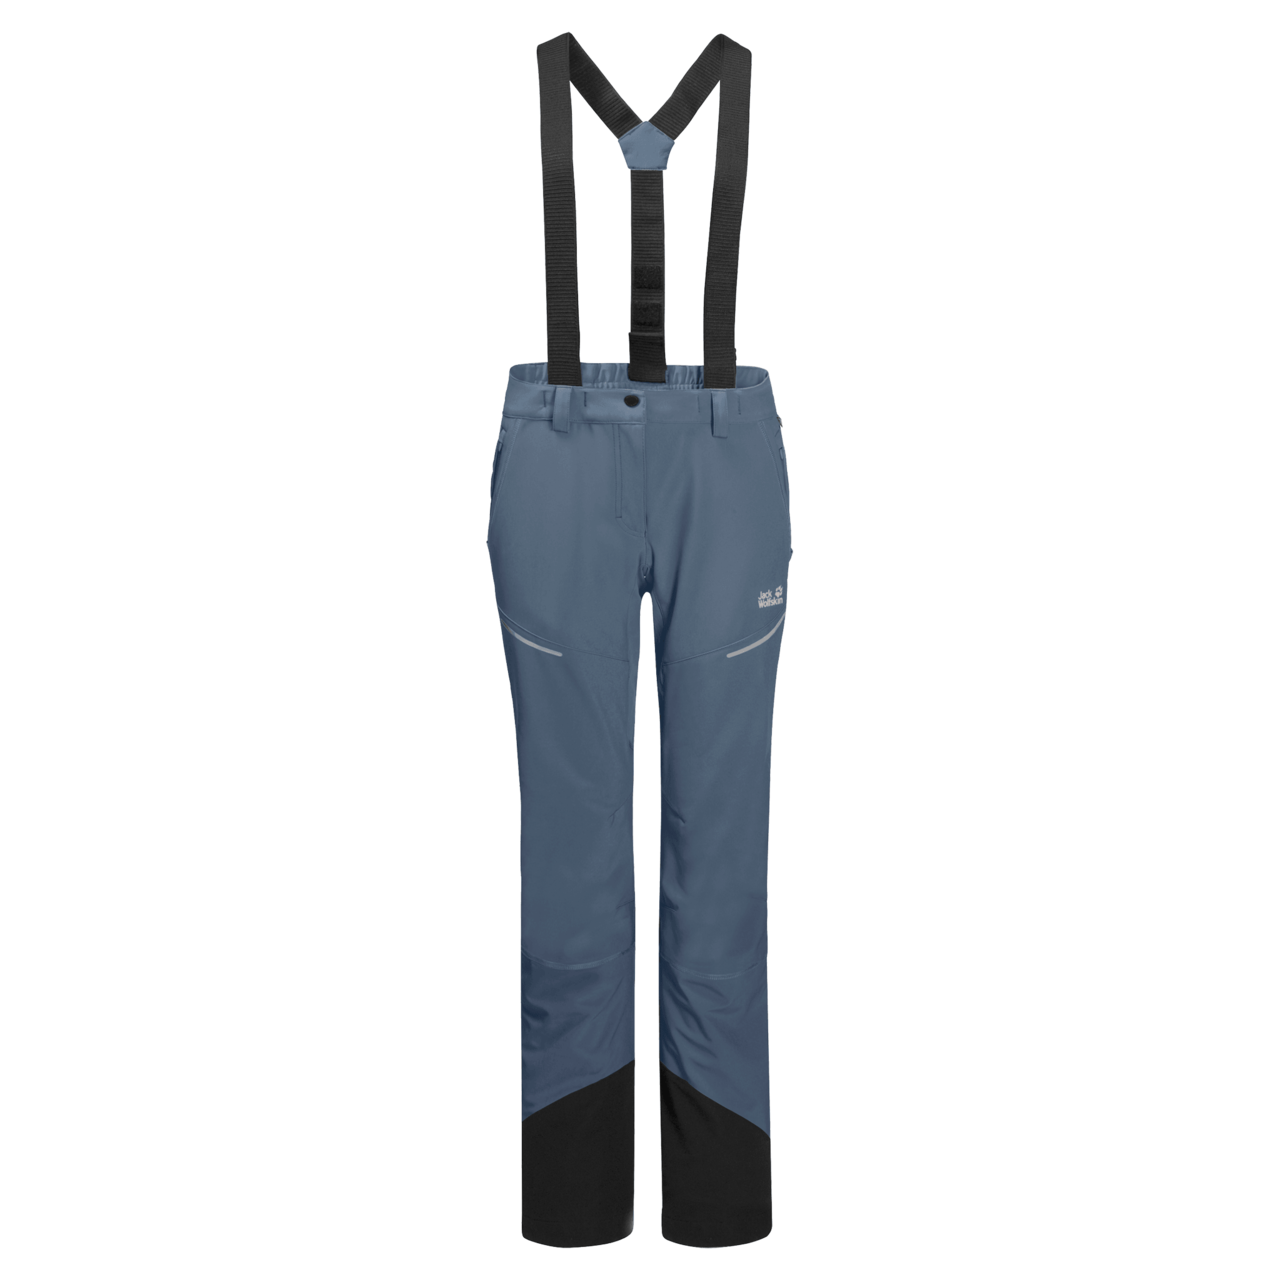 Whistler Maze LayerTech Ski Pants W-Pro 15000 - Ski Trousers Women's | Buy  online | Alpinetrek.co.uk